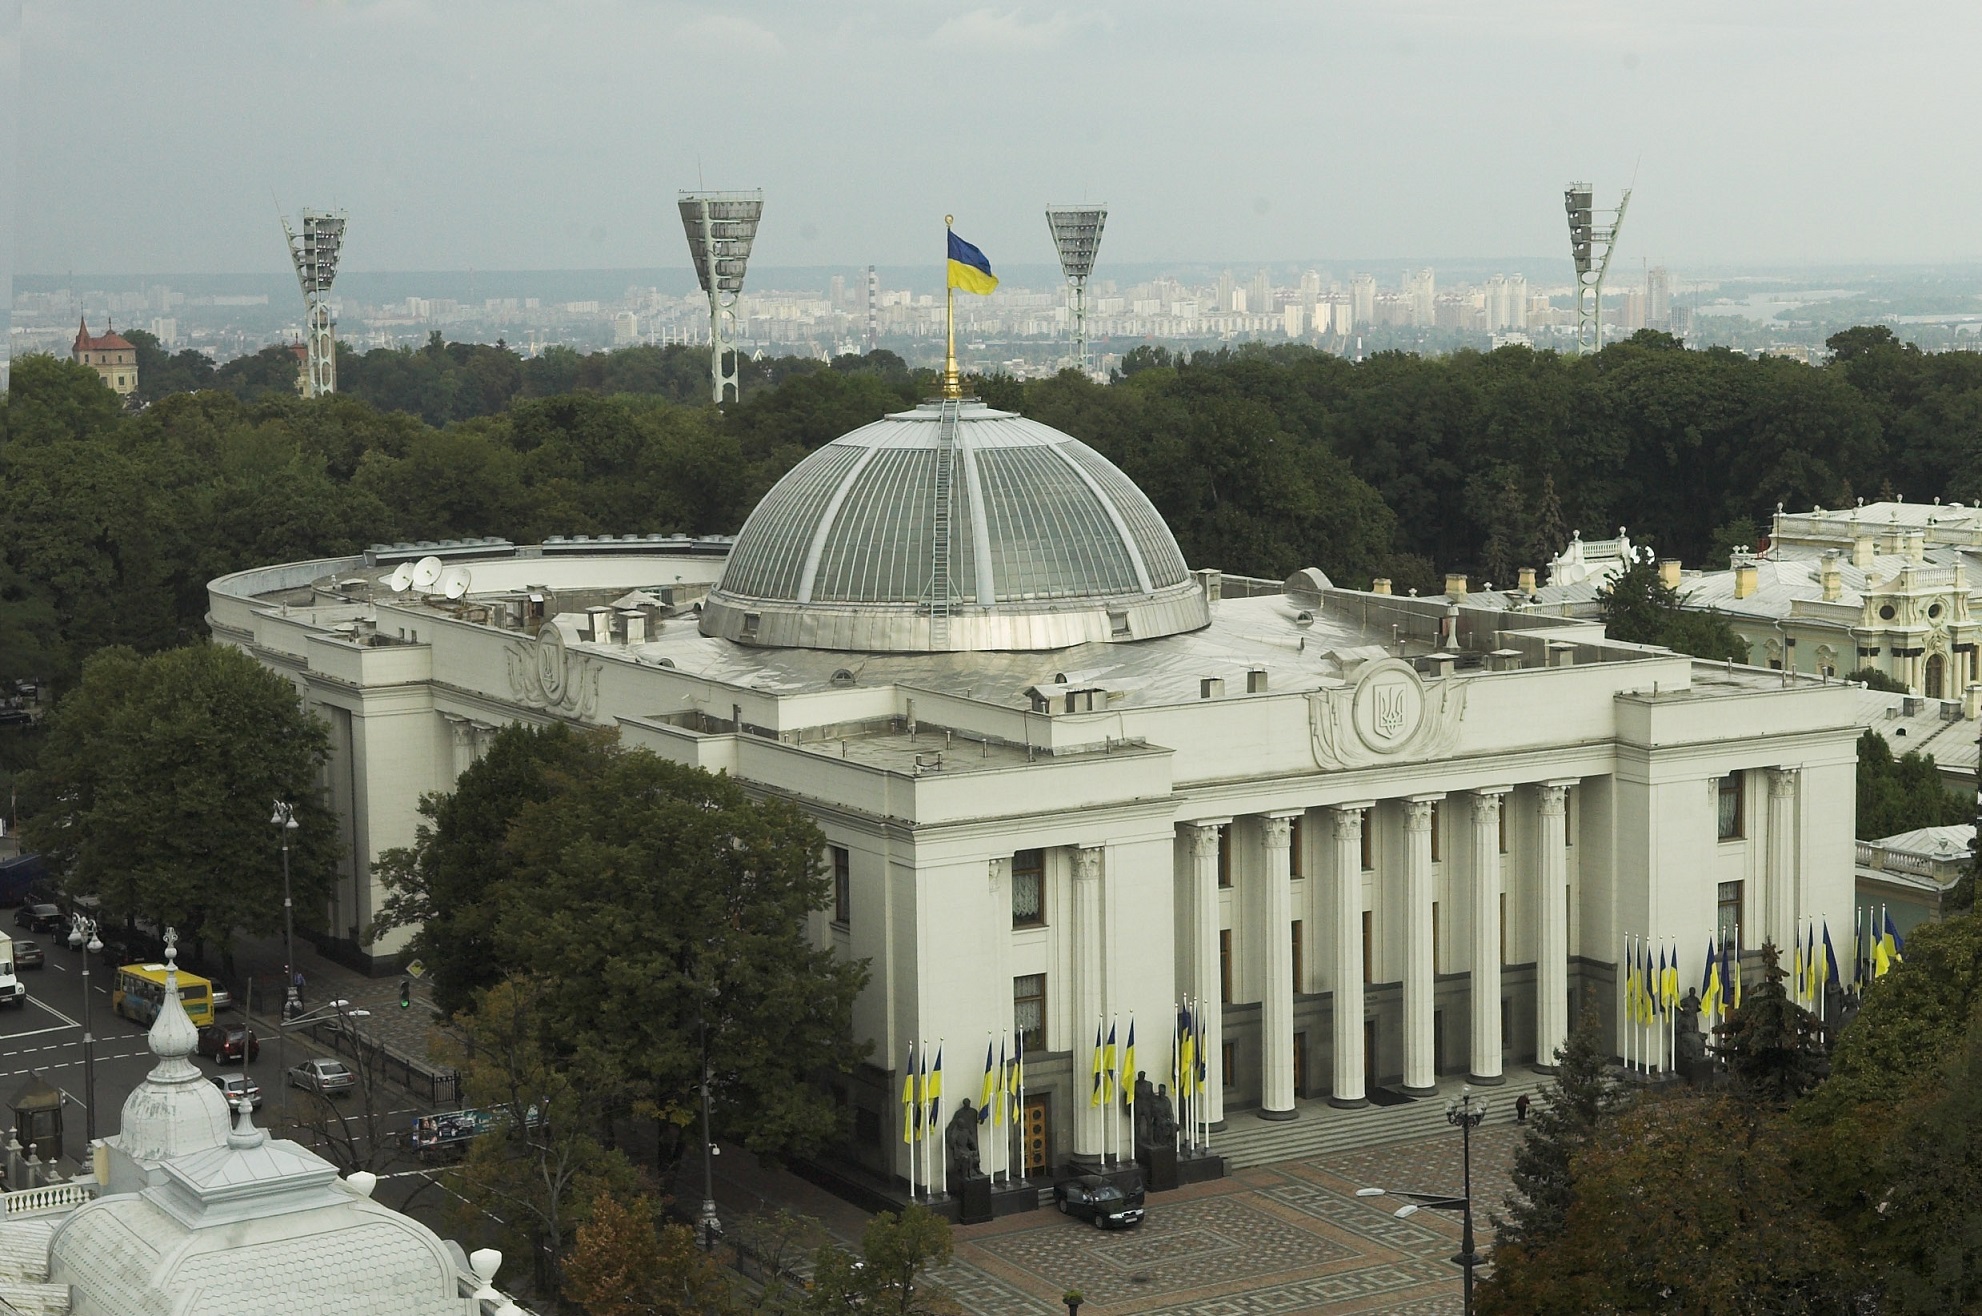 Рада призвала НАТО предоставить Украине План действий по членству